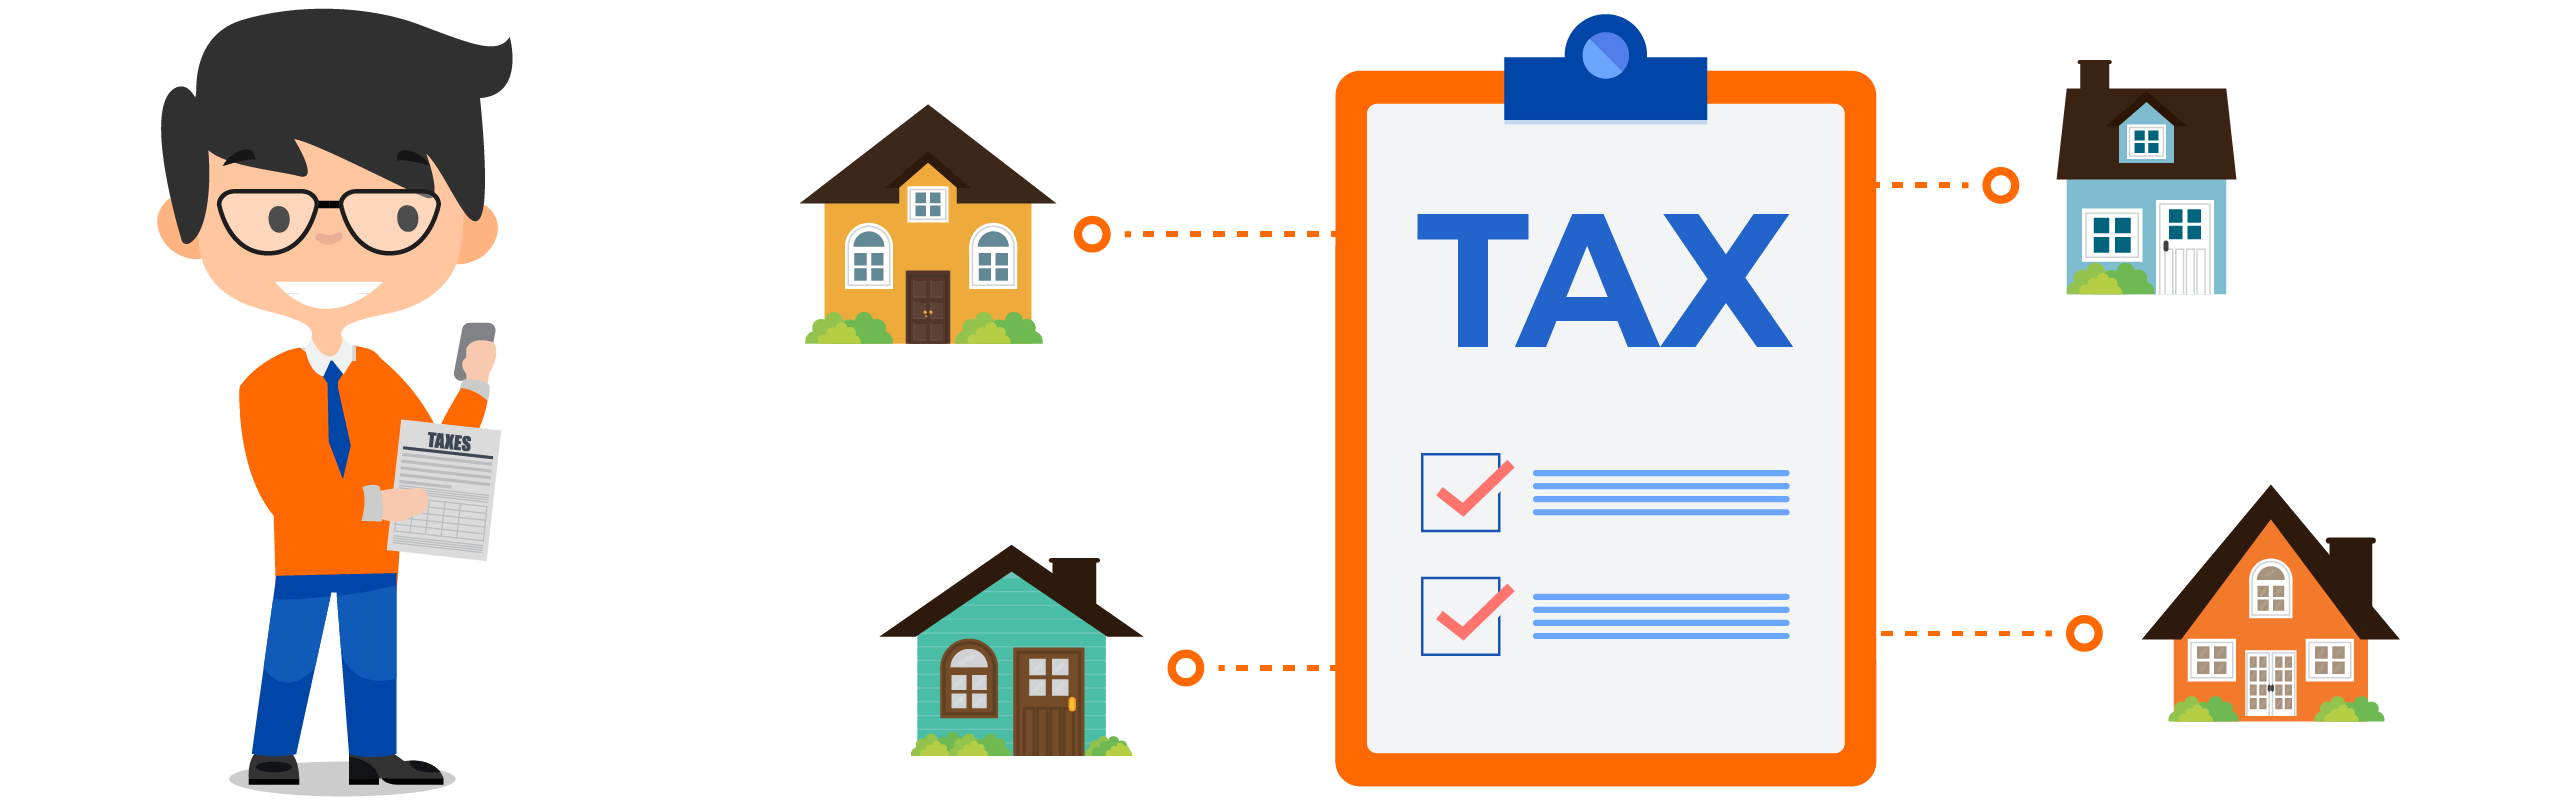 Como funciona o pagamento de imposto para imóveis mobiliados?